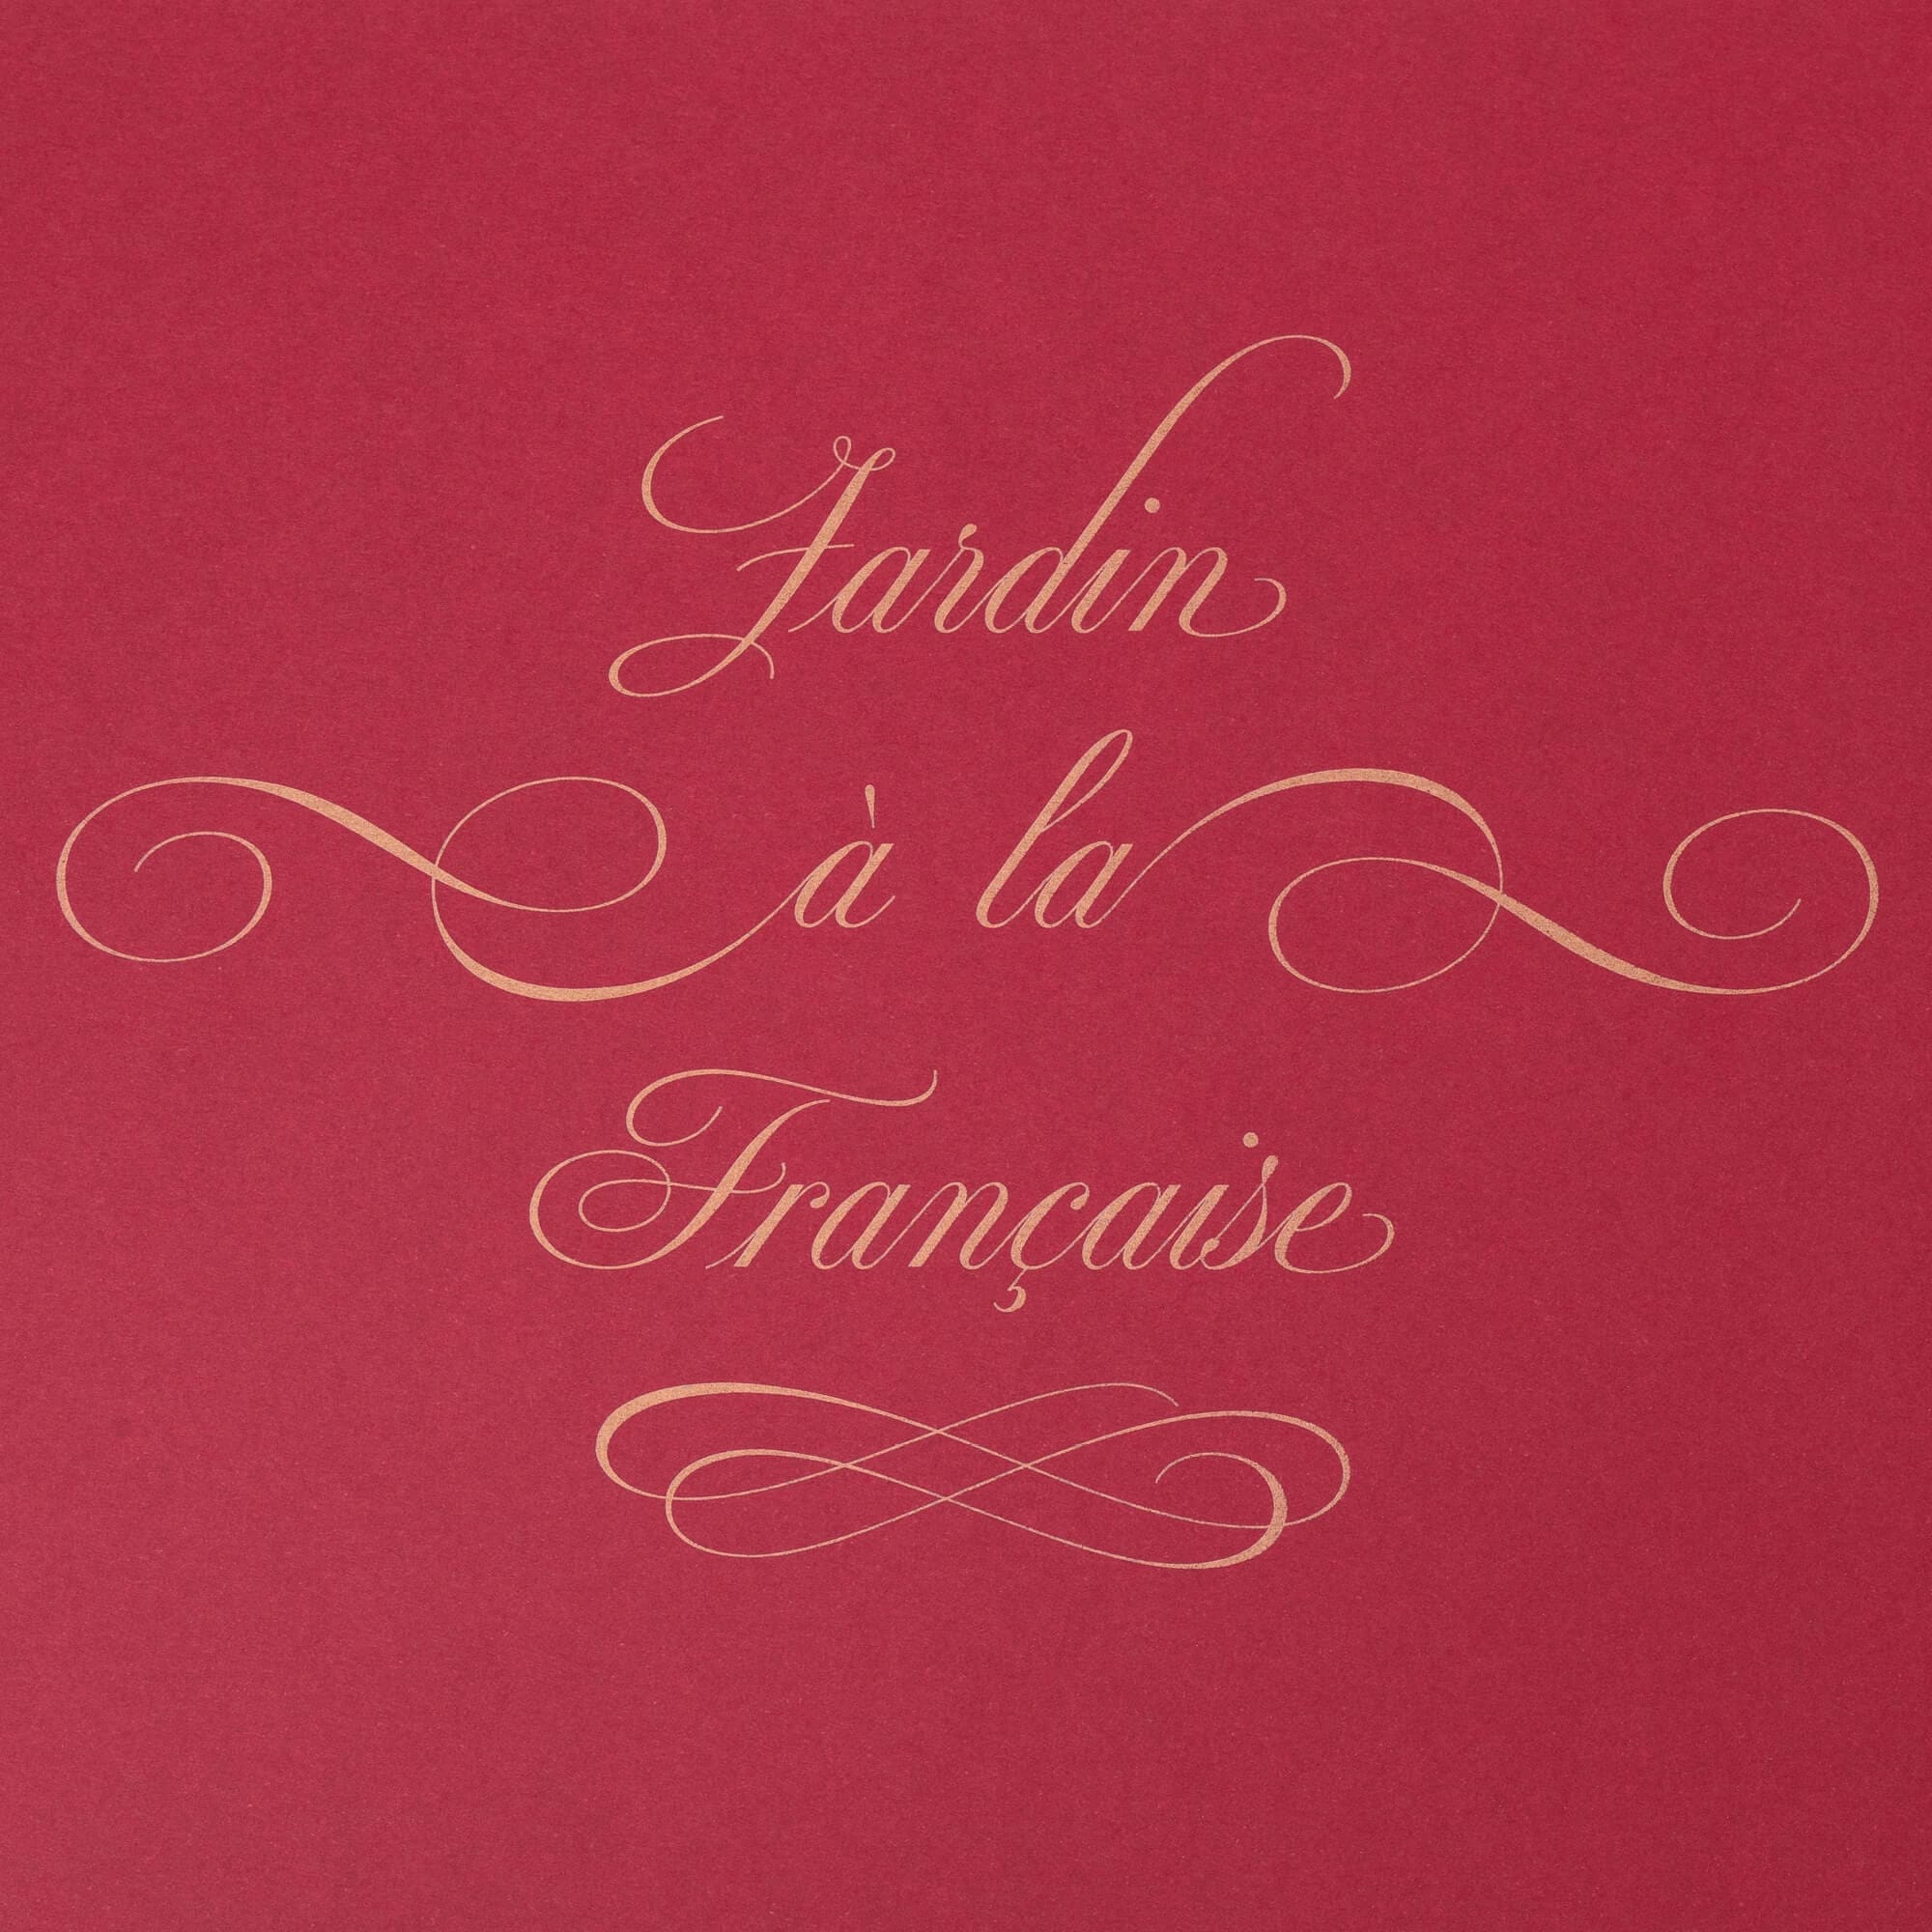 jardin à la francaise : composition typographique signé IchetKar pour le room book du château Louise de la Vallière, favorite du roi louis XIV